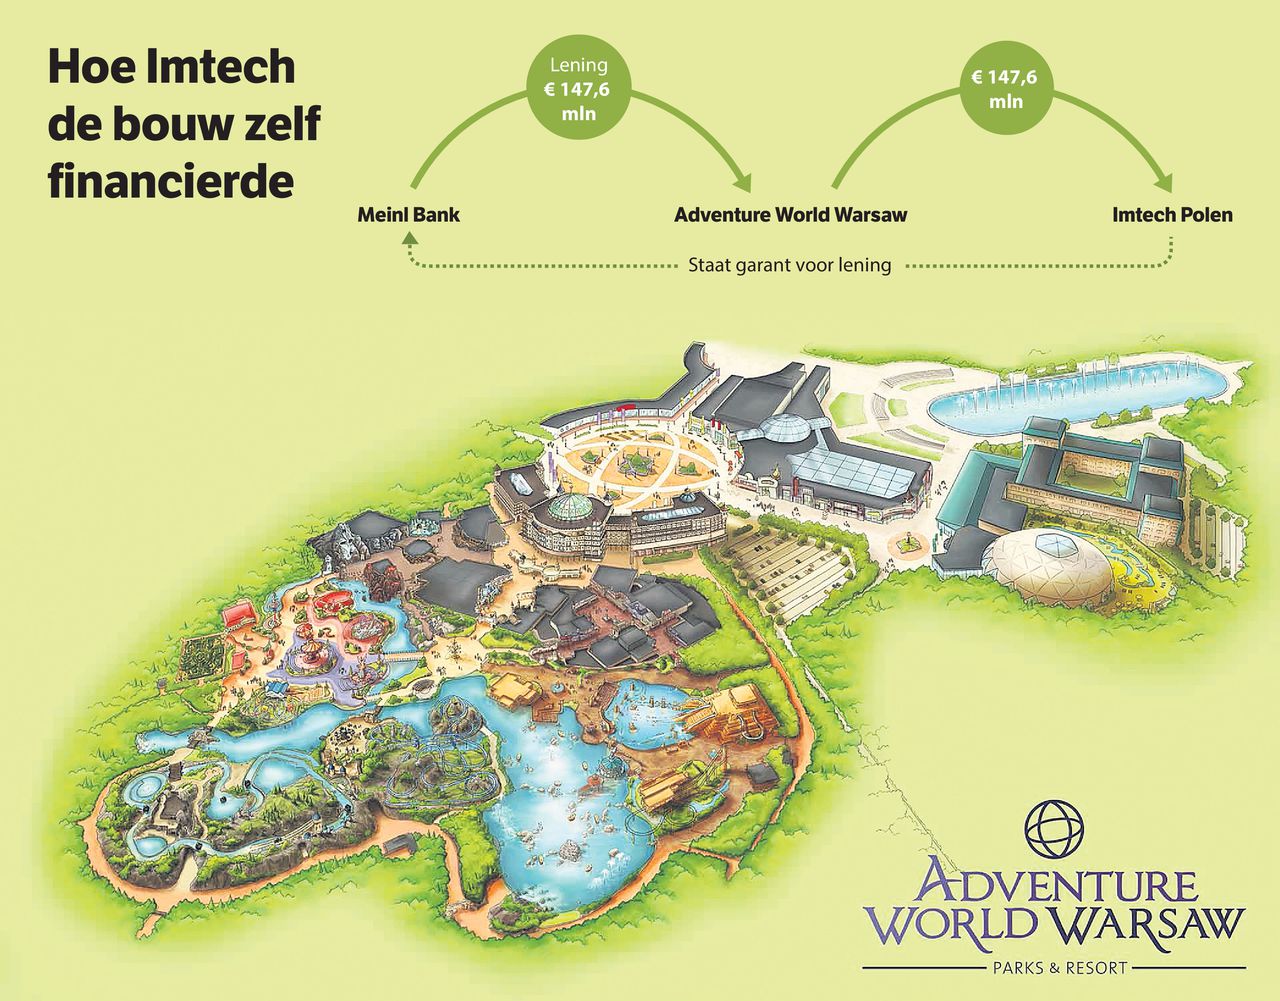 Imtech stond zelf garant voor de lening waarmee de ontwikkelaar van pretpak Adventure World Warsaw het benodigde voorschot aan Imtech kon betalen. Zo maakte Imtech de bouw ervan mogelijk.